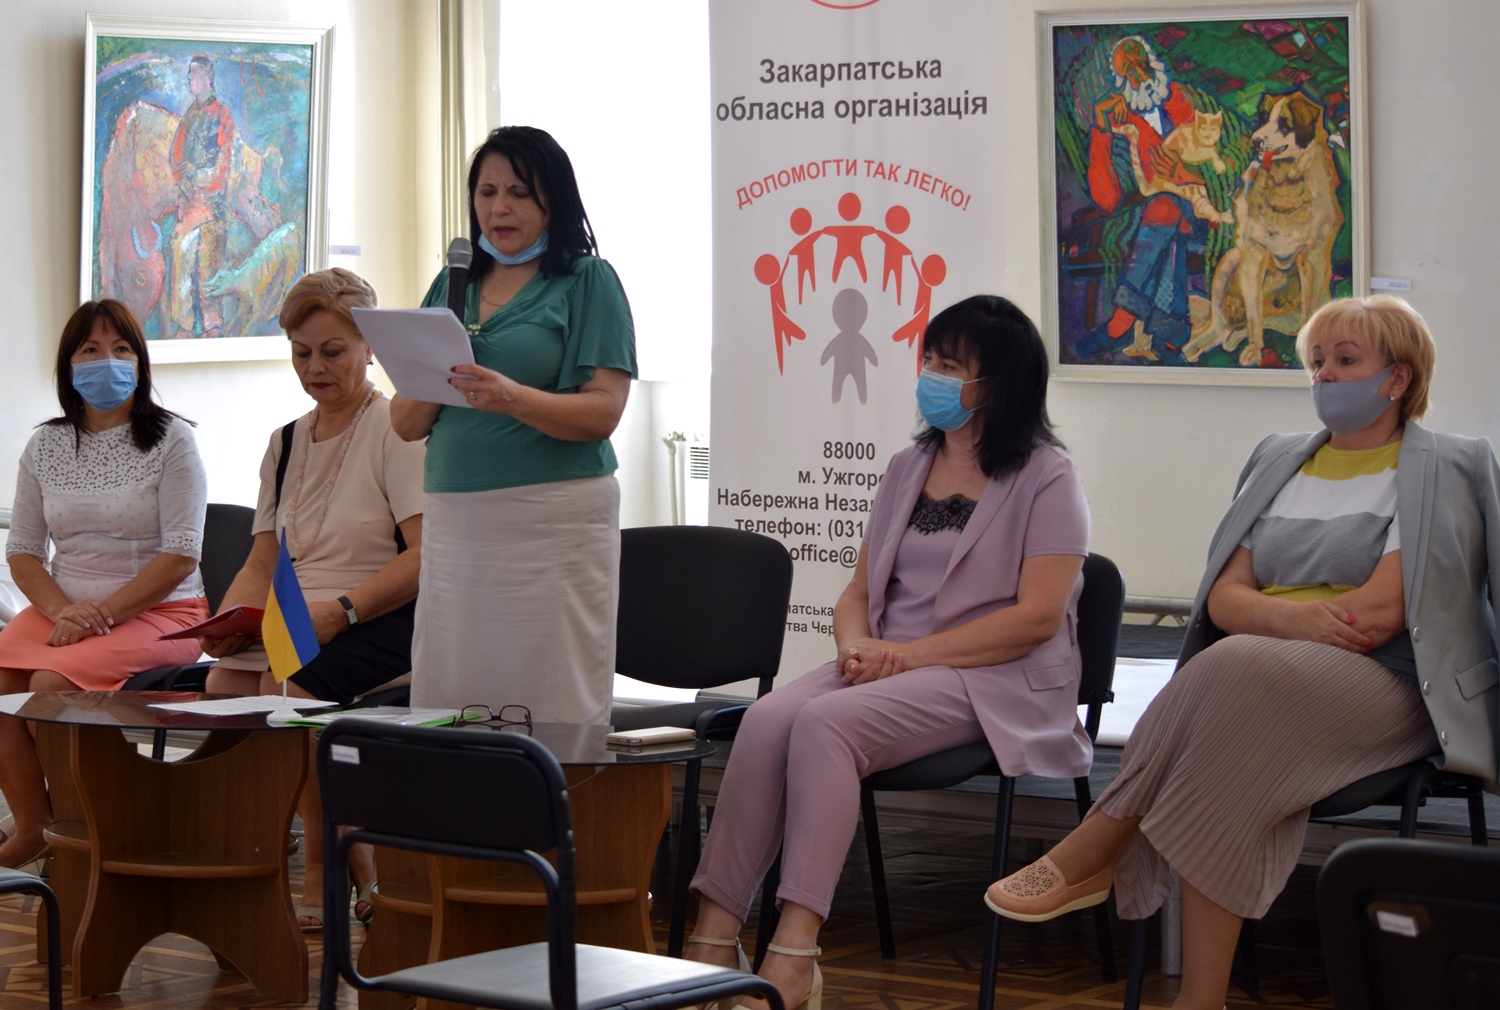 Ужгородська міська організація Товариства Червоного Хреста України звітувала про роботу за 5 років